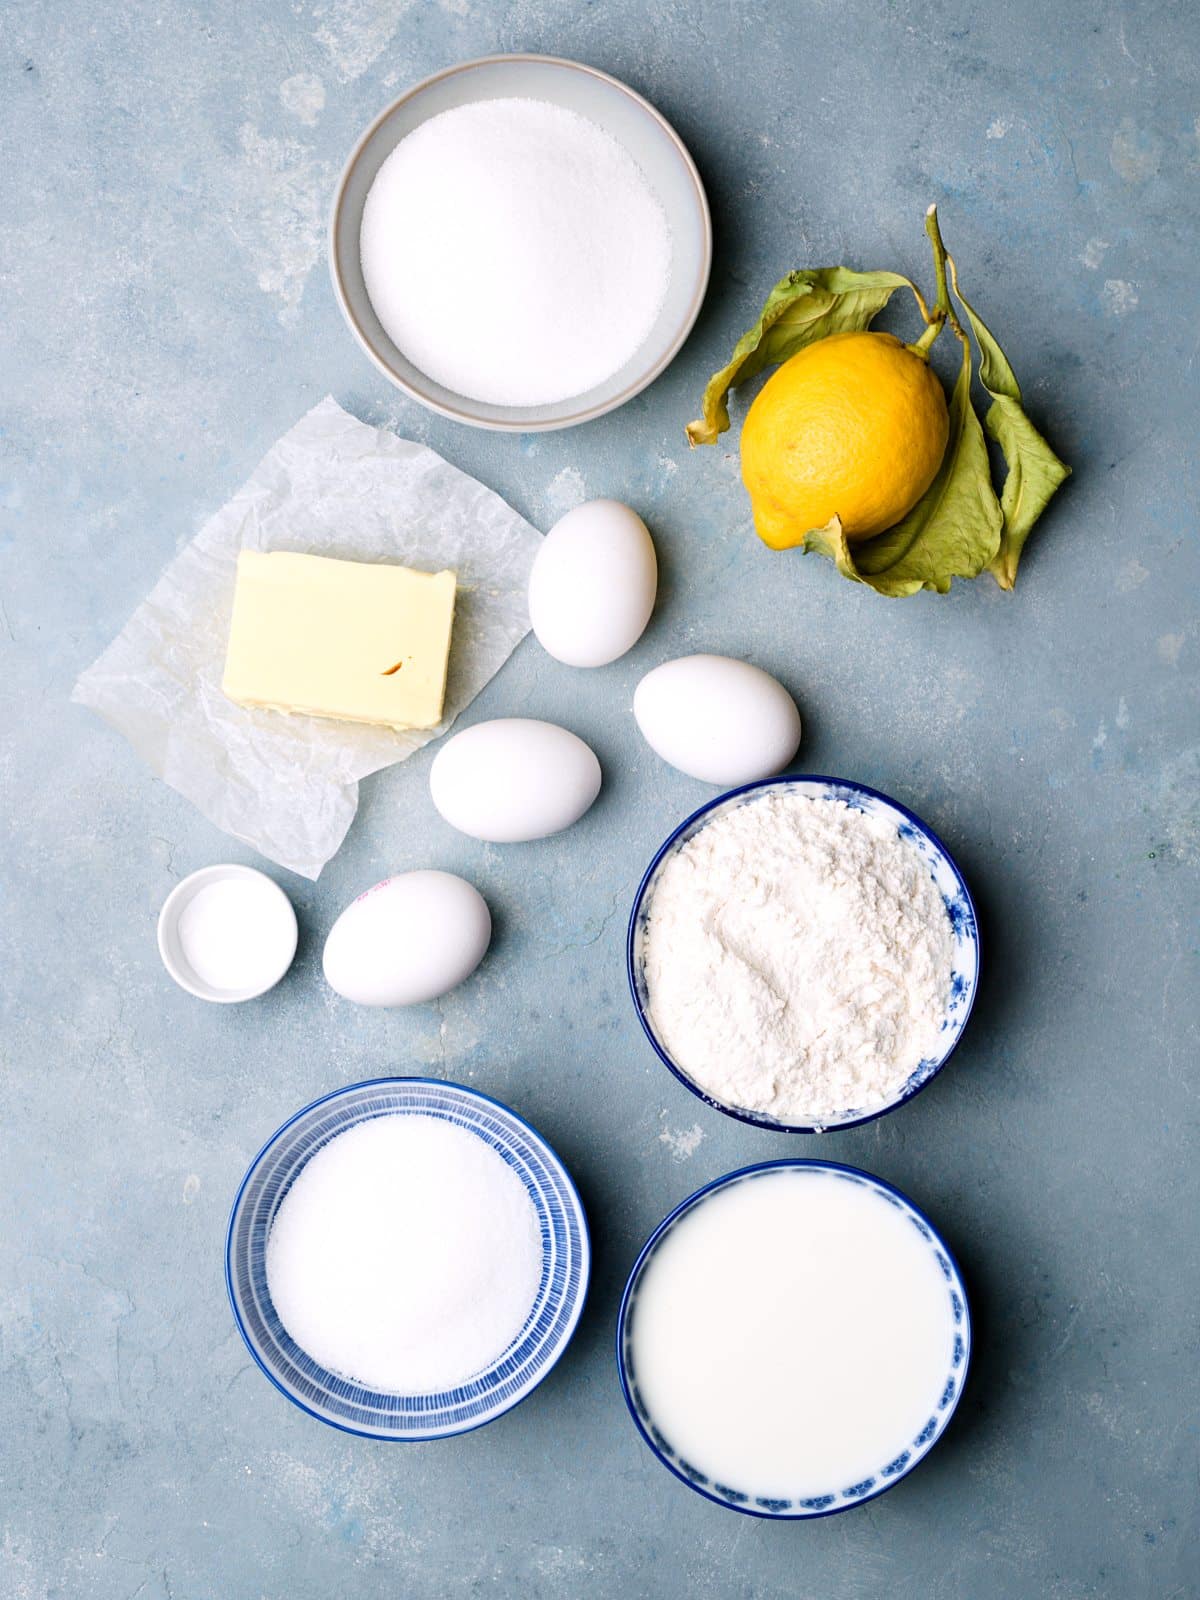 eggs, flour, sugar, butter, milk in bowls and a fresh lemon. 